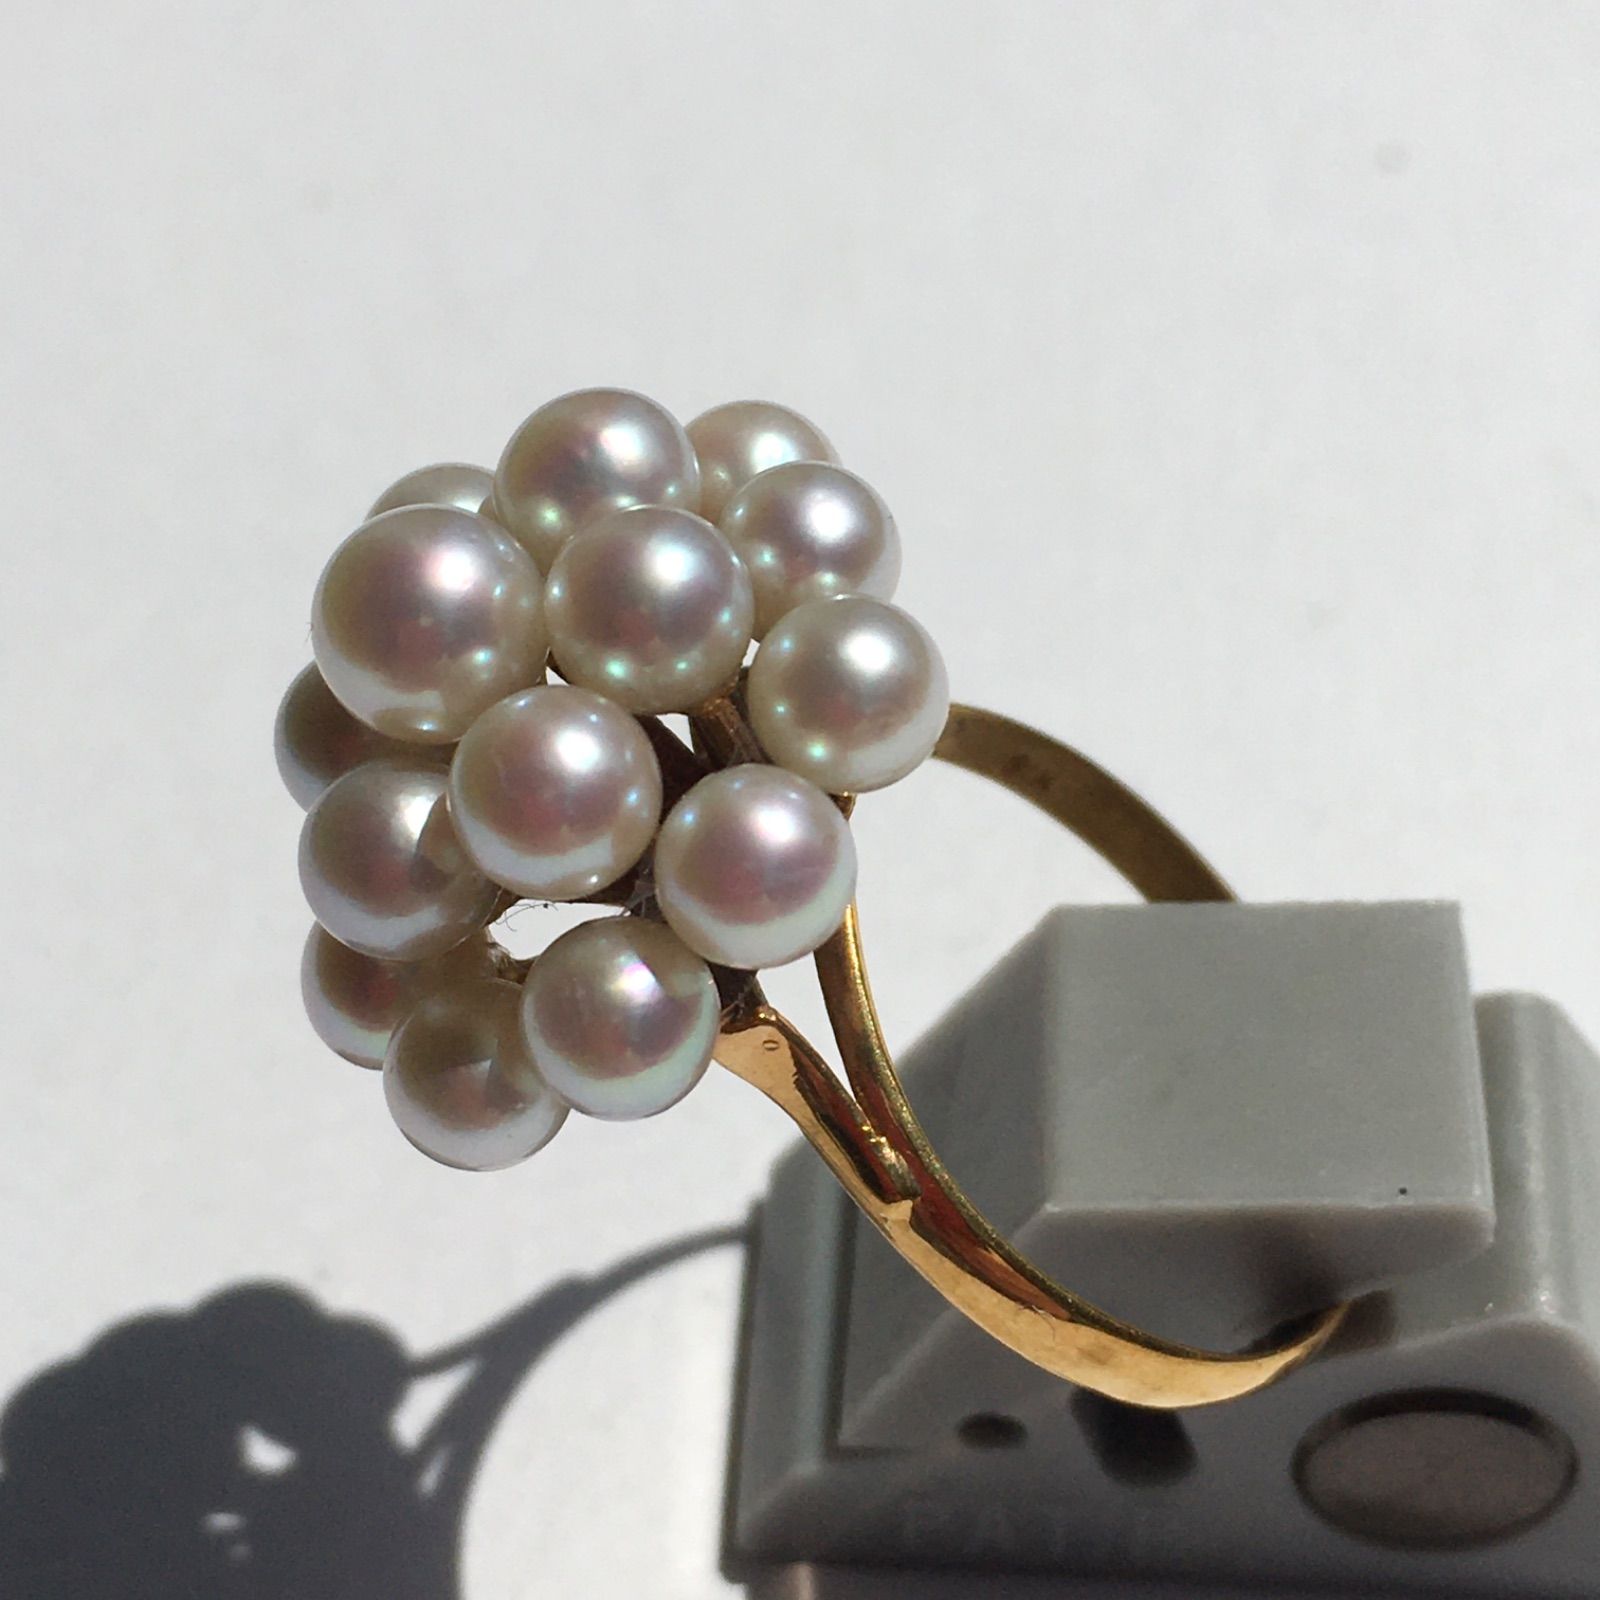 17粒の真珠が咲く18金のリング 12号 新品 宝石店ストック品 - メルカリ